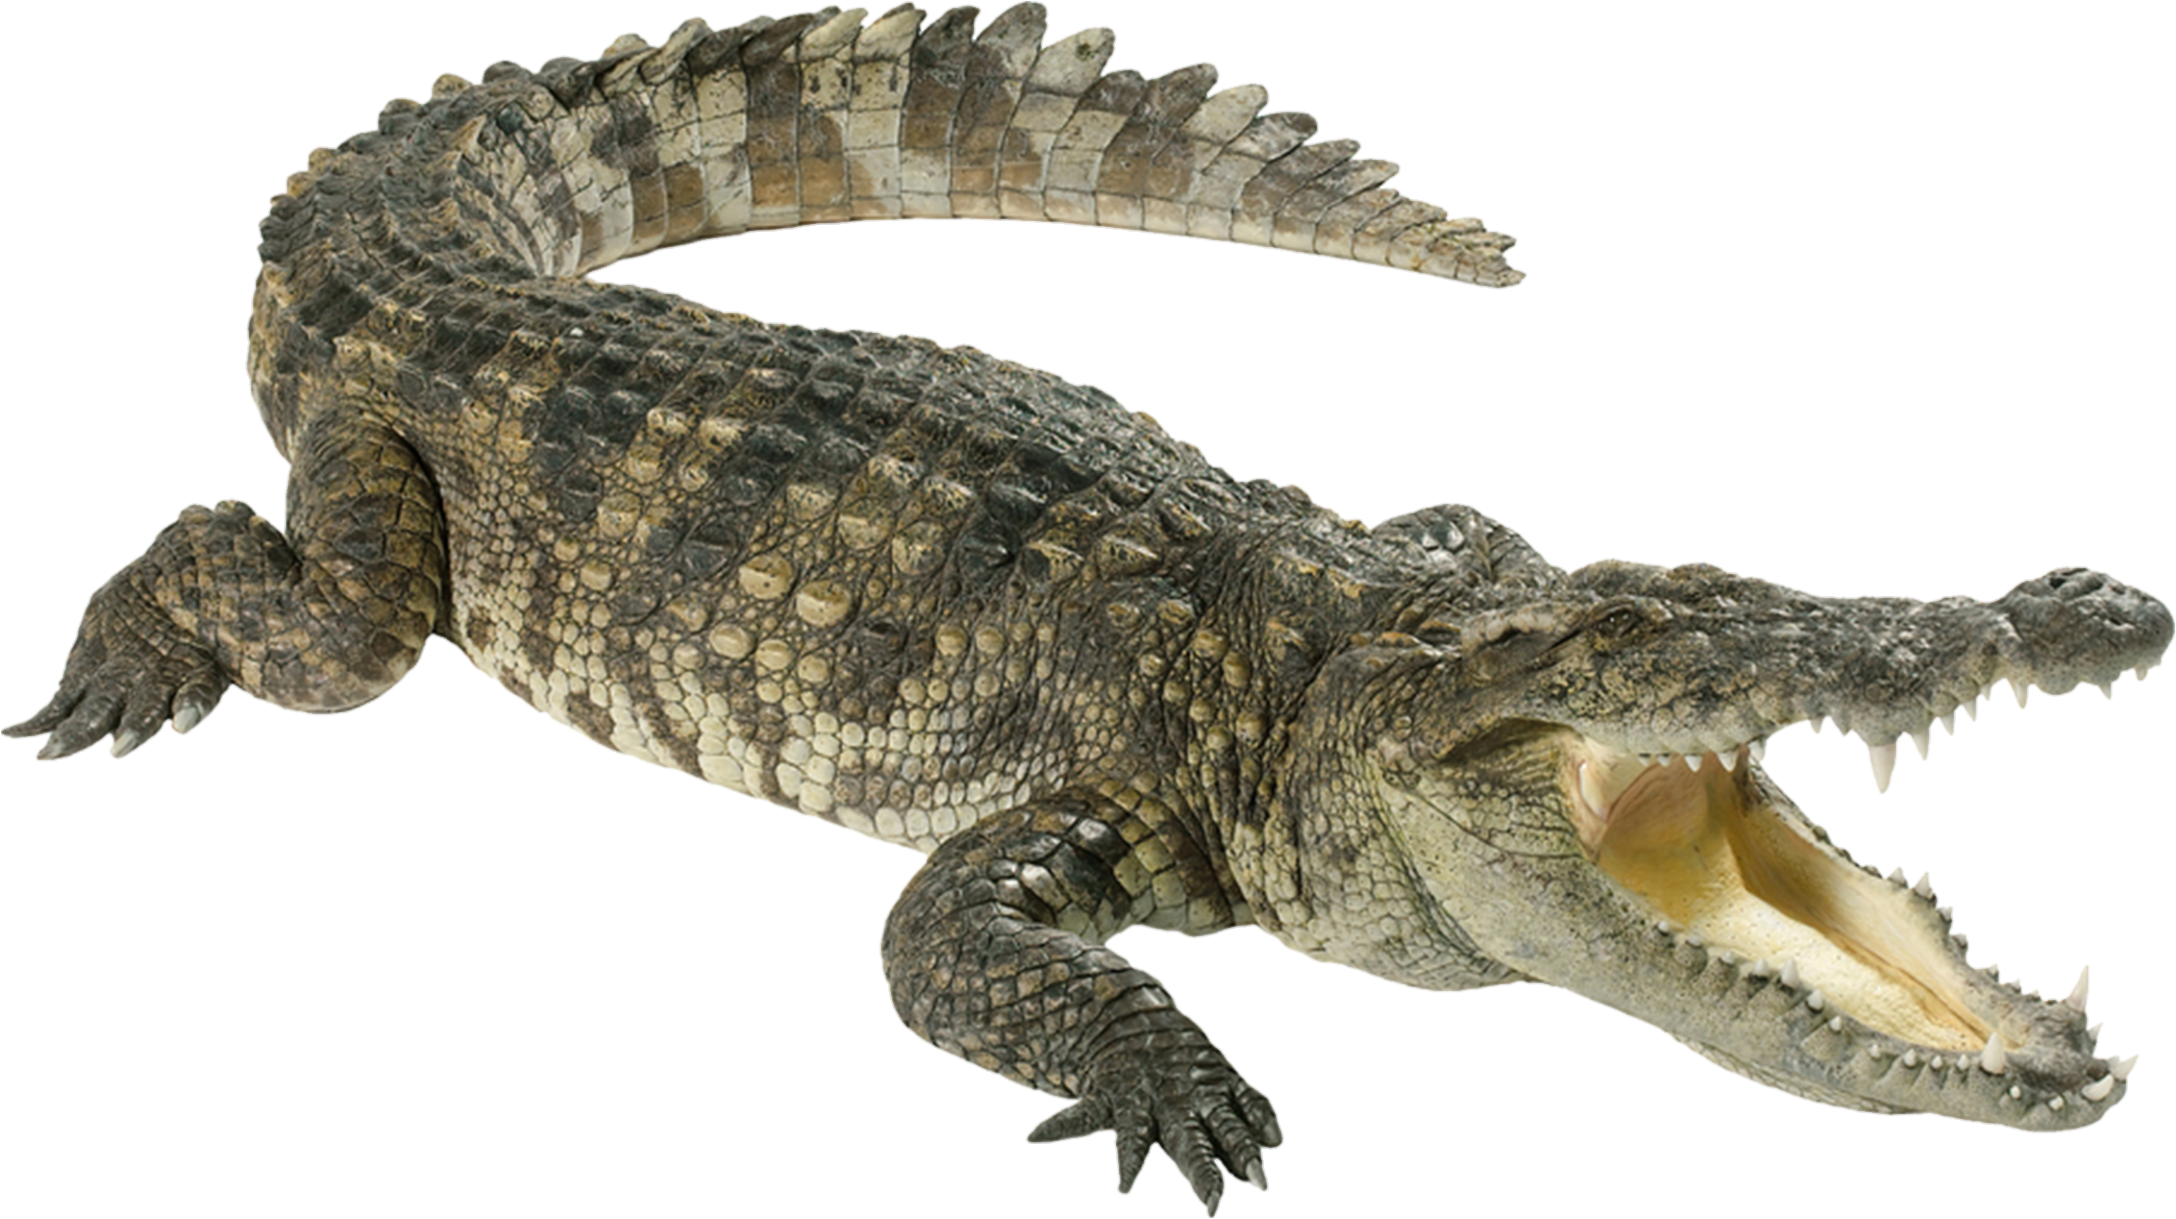 Crocodile-10